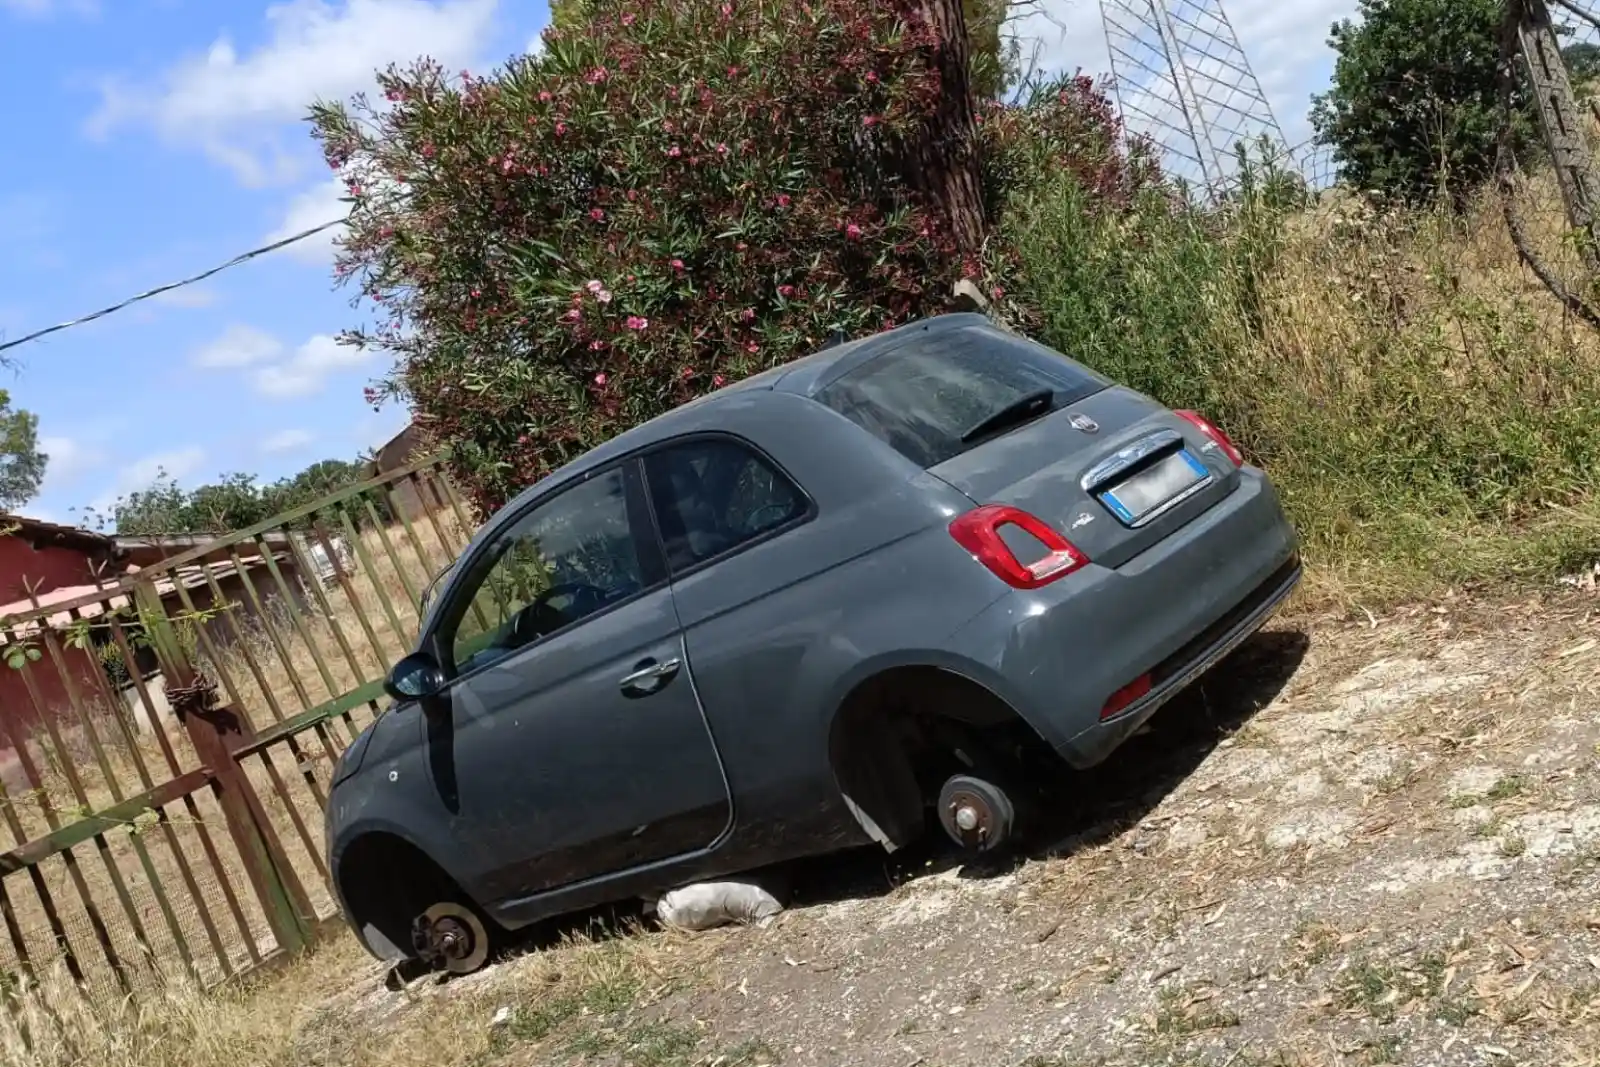 Ennesima auto rubata ritrovata nelle campagne di Aprilia... senza le ruote